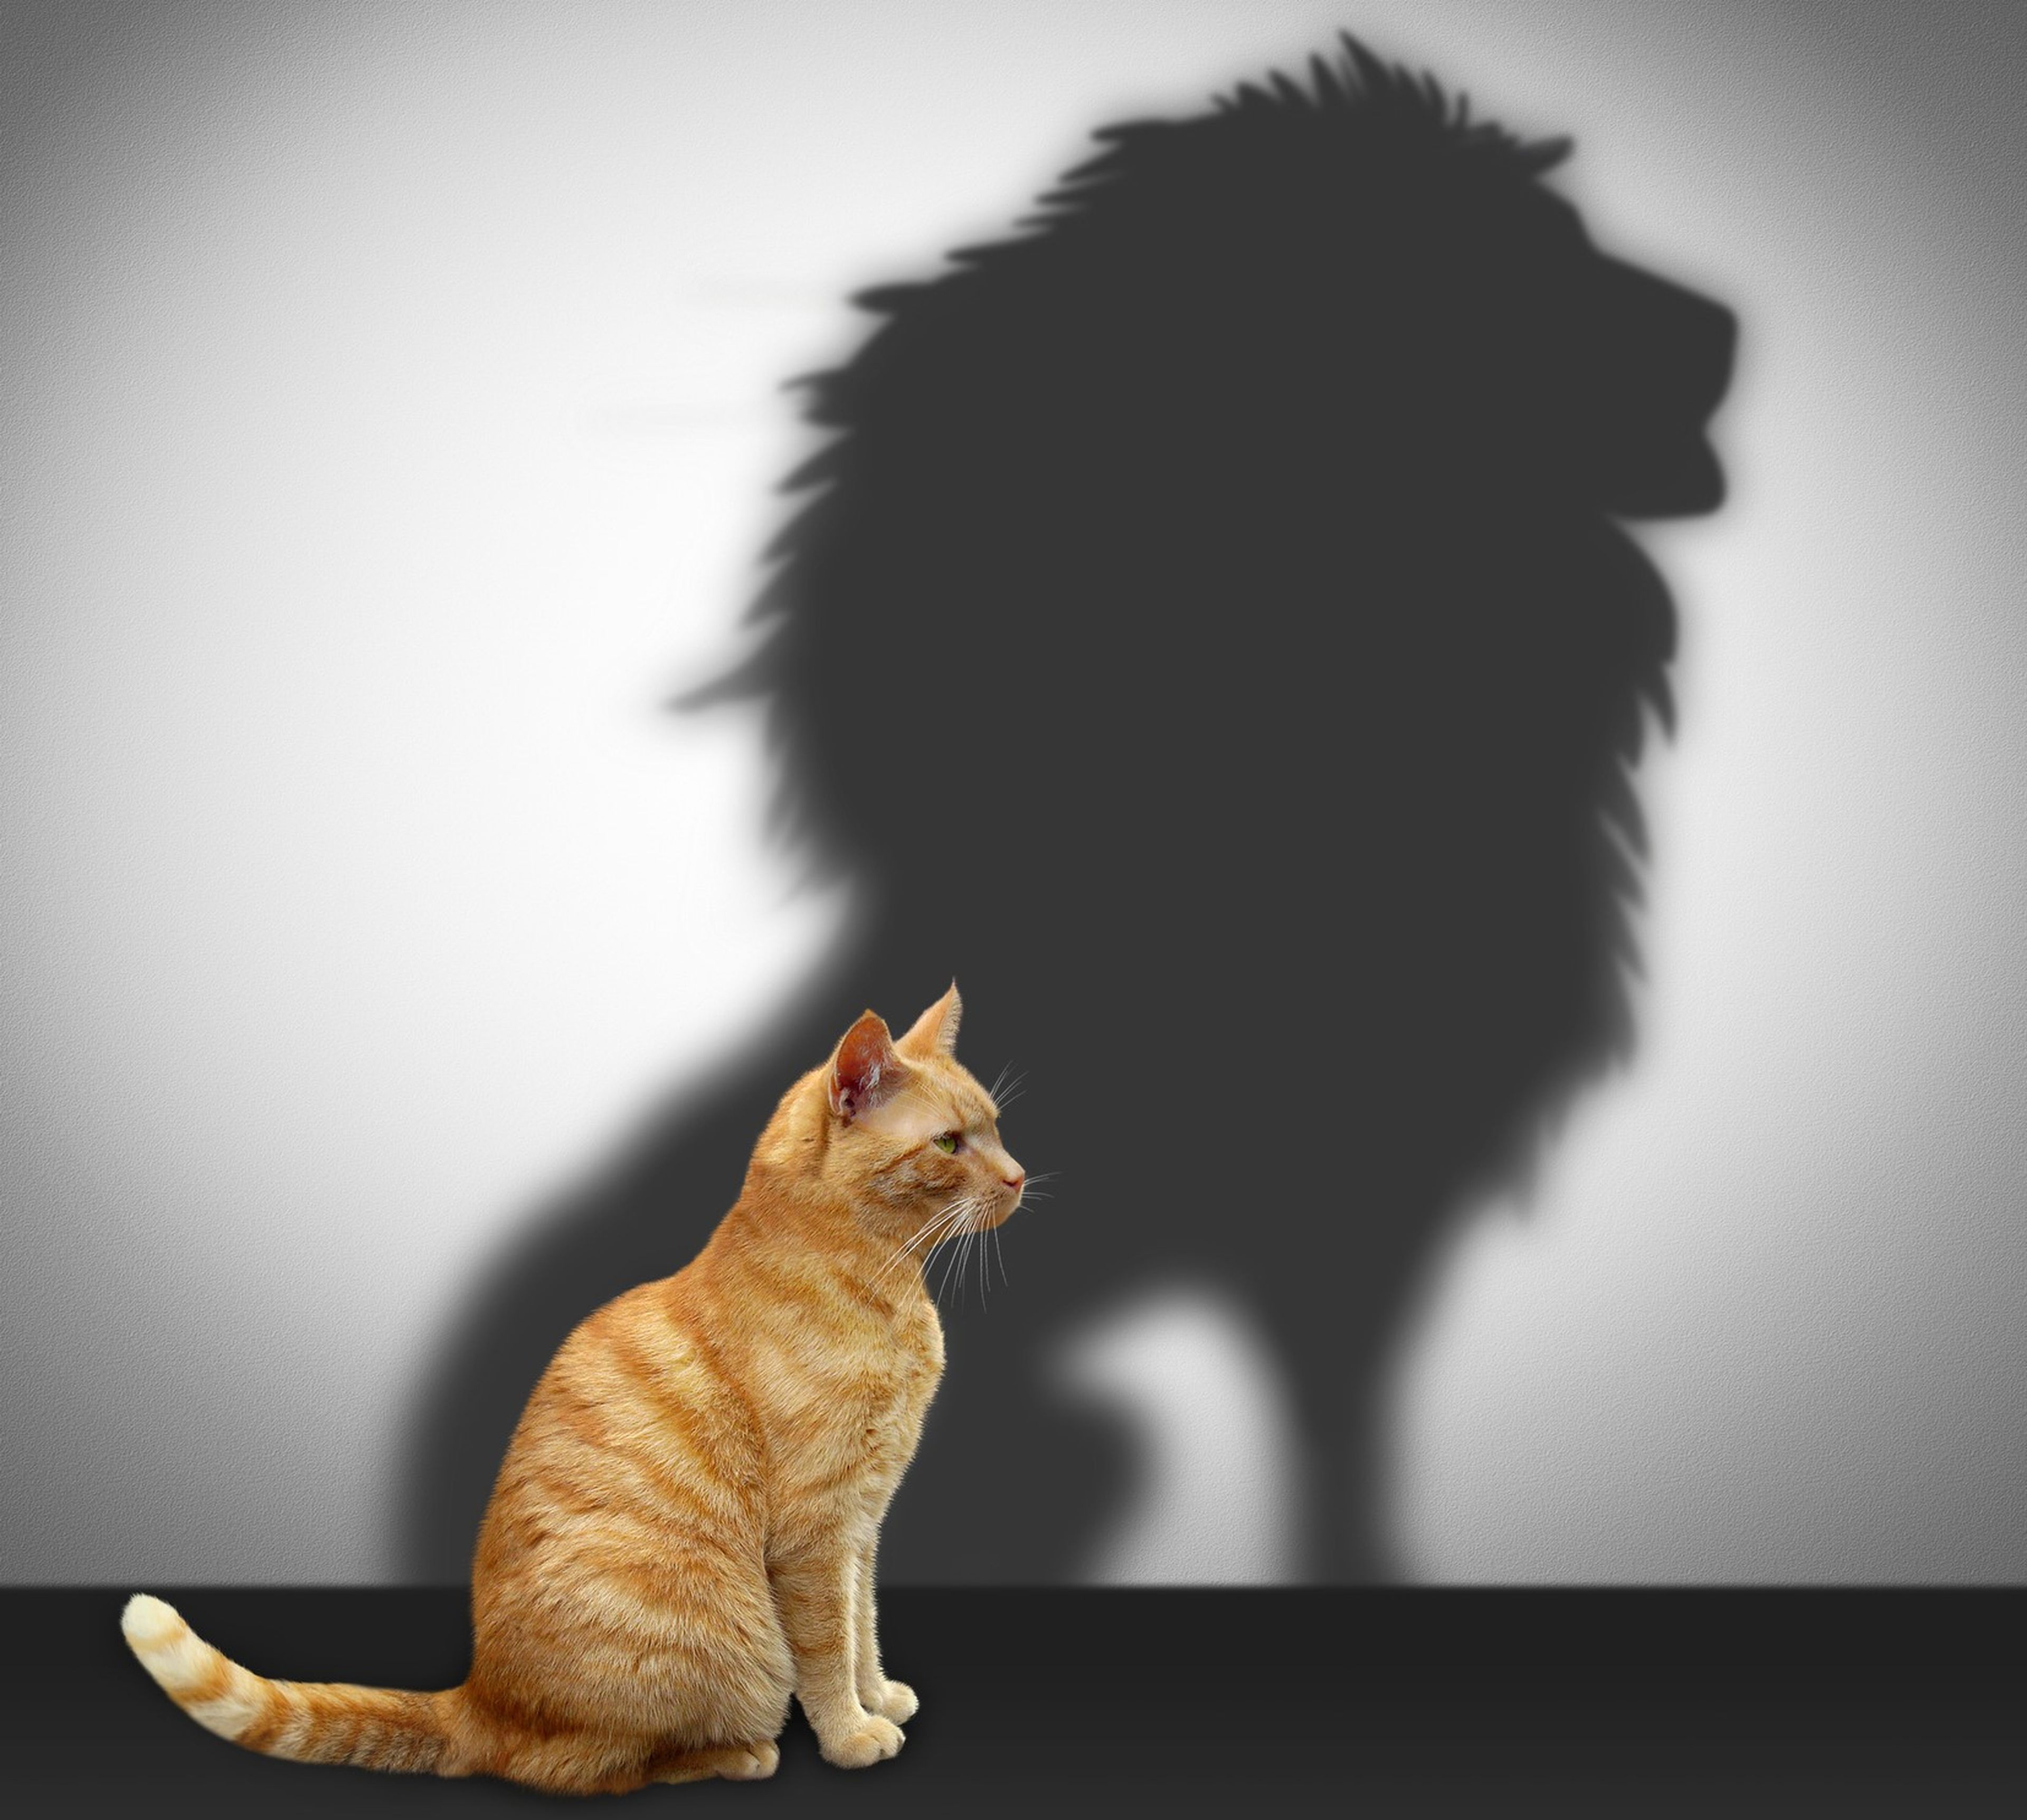 Gato con sombra de león, motivación